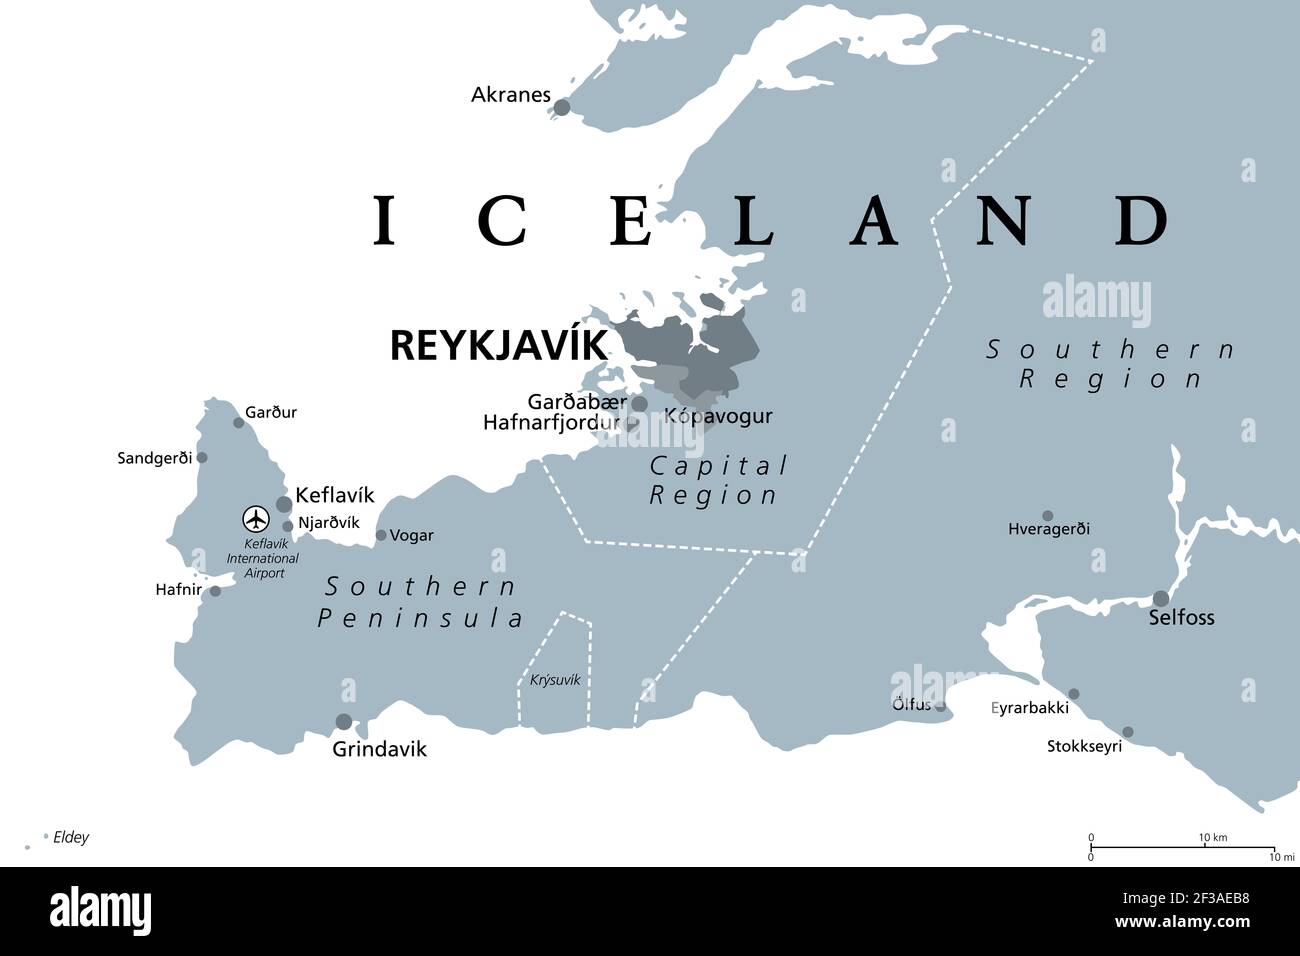 Island, Hauptstadtregion und Südliche Halbinsel, graue politische Landkarte. Reykjavik und Umgebung, mit Reykjanes Peninsula, einer Region im Südwesten Islands. Stockfoto